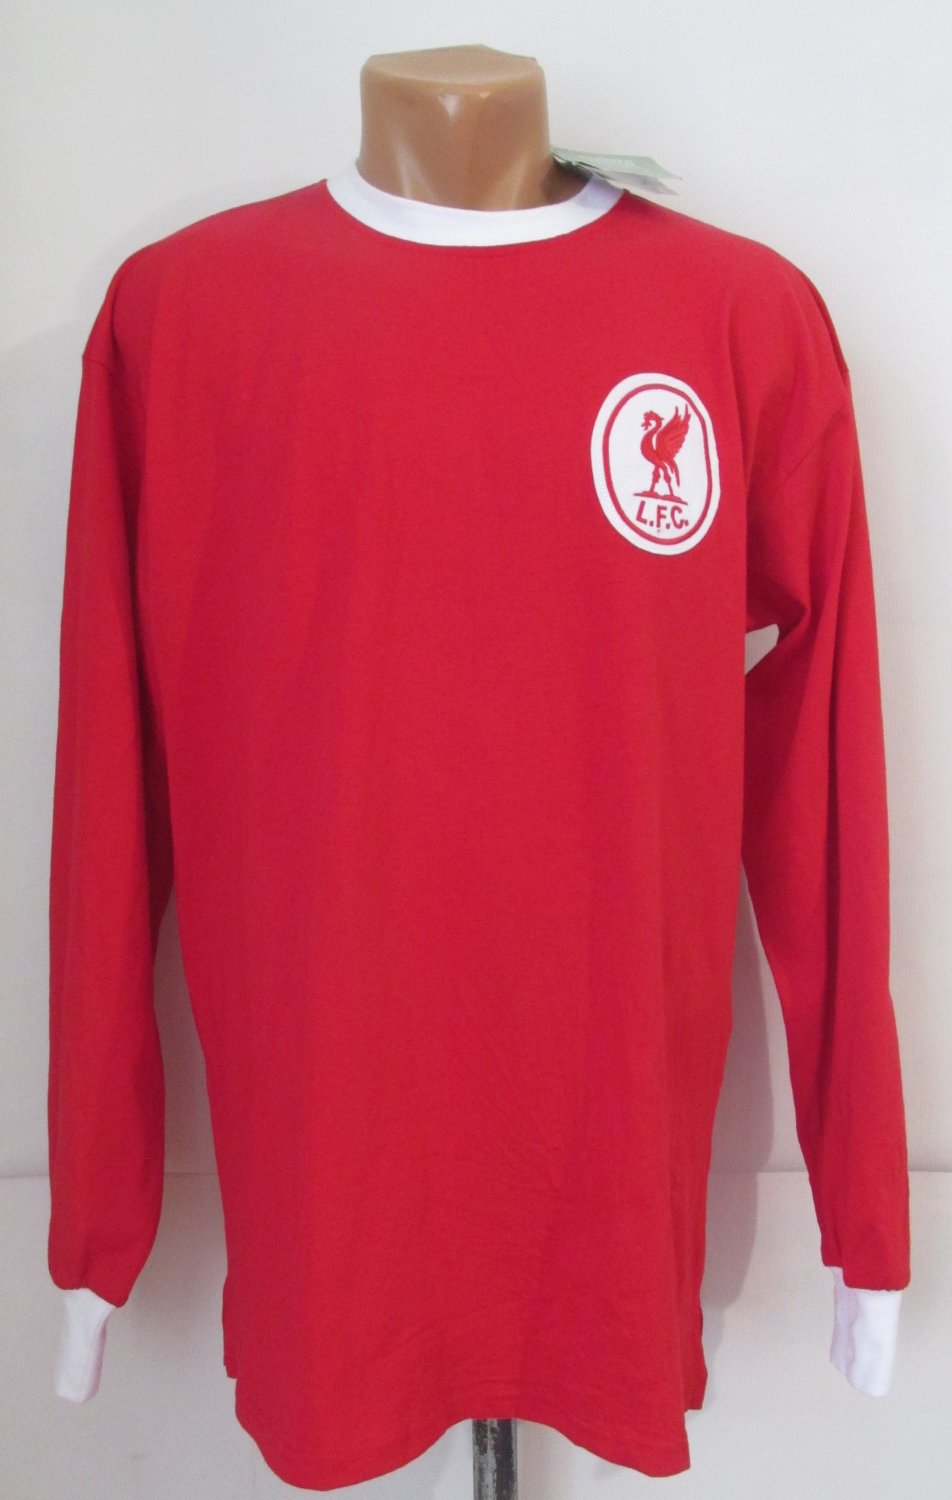 Liverpool Retro Replicas football shirt 1960 - 1969. Sponsored by no